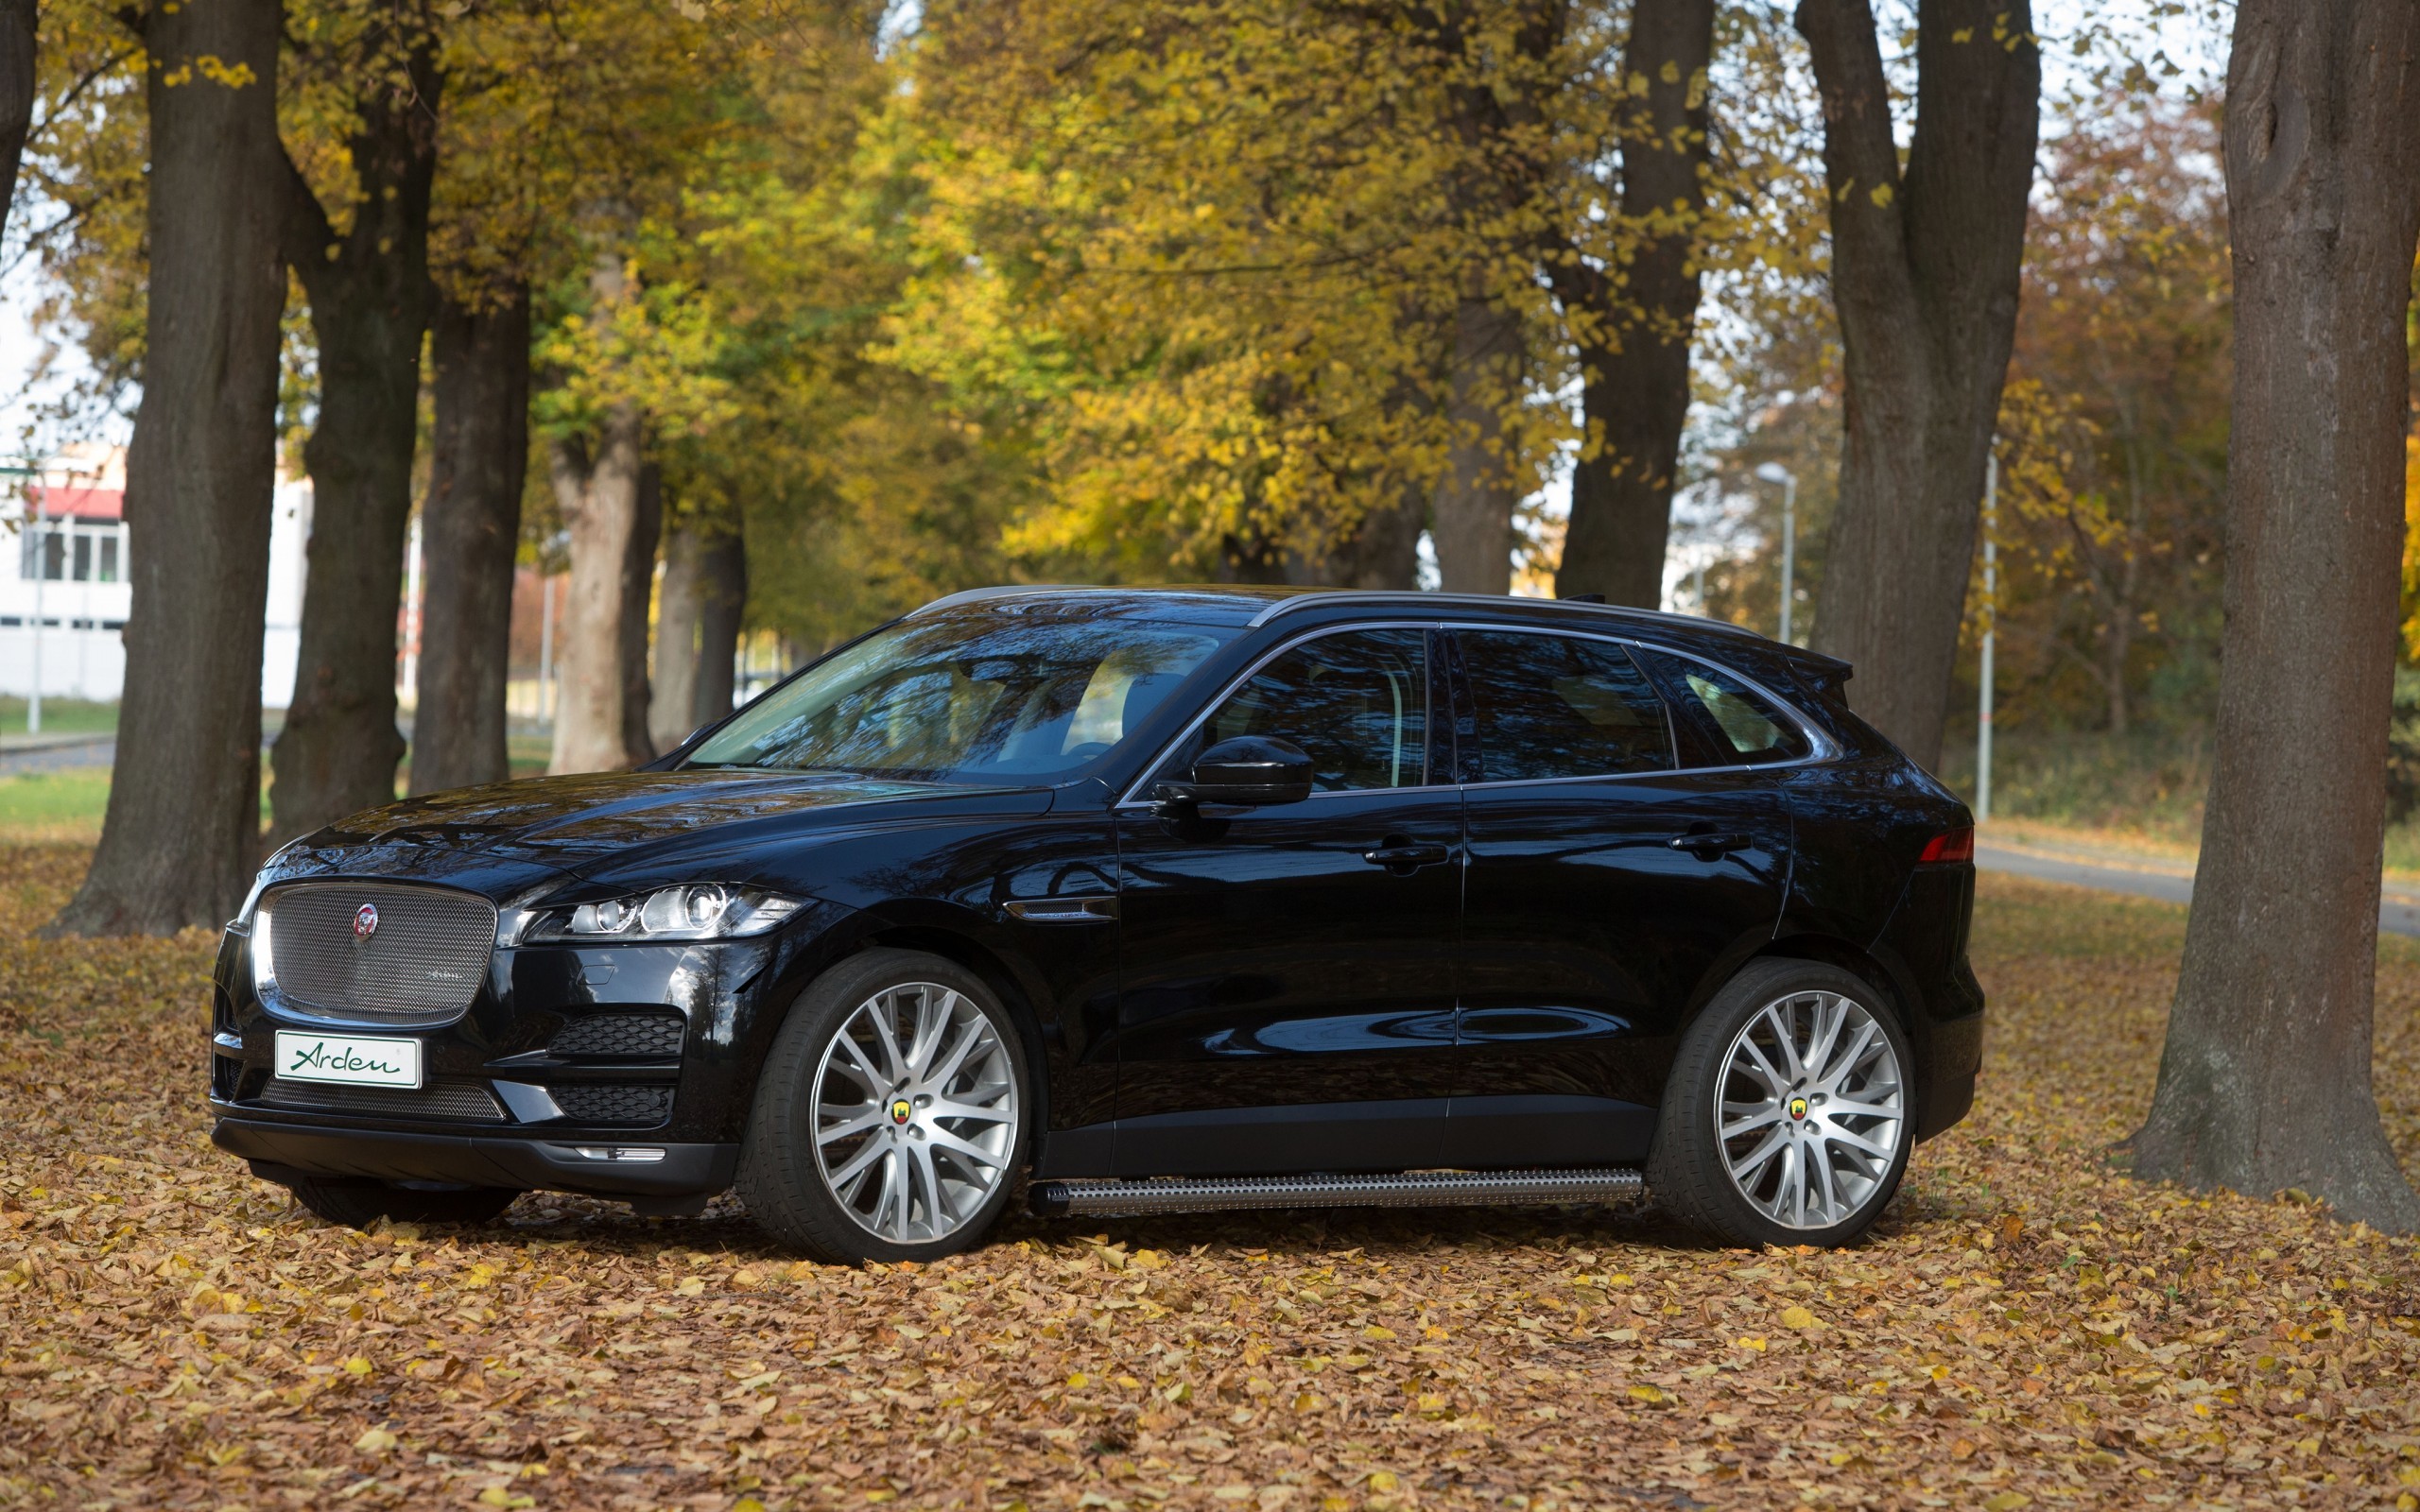 Jaguar F-pace, Black, Side View, Autumn, Leaves, Cars - Black Jaguar Car Hd - HD Wallpaper 